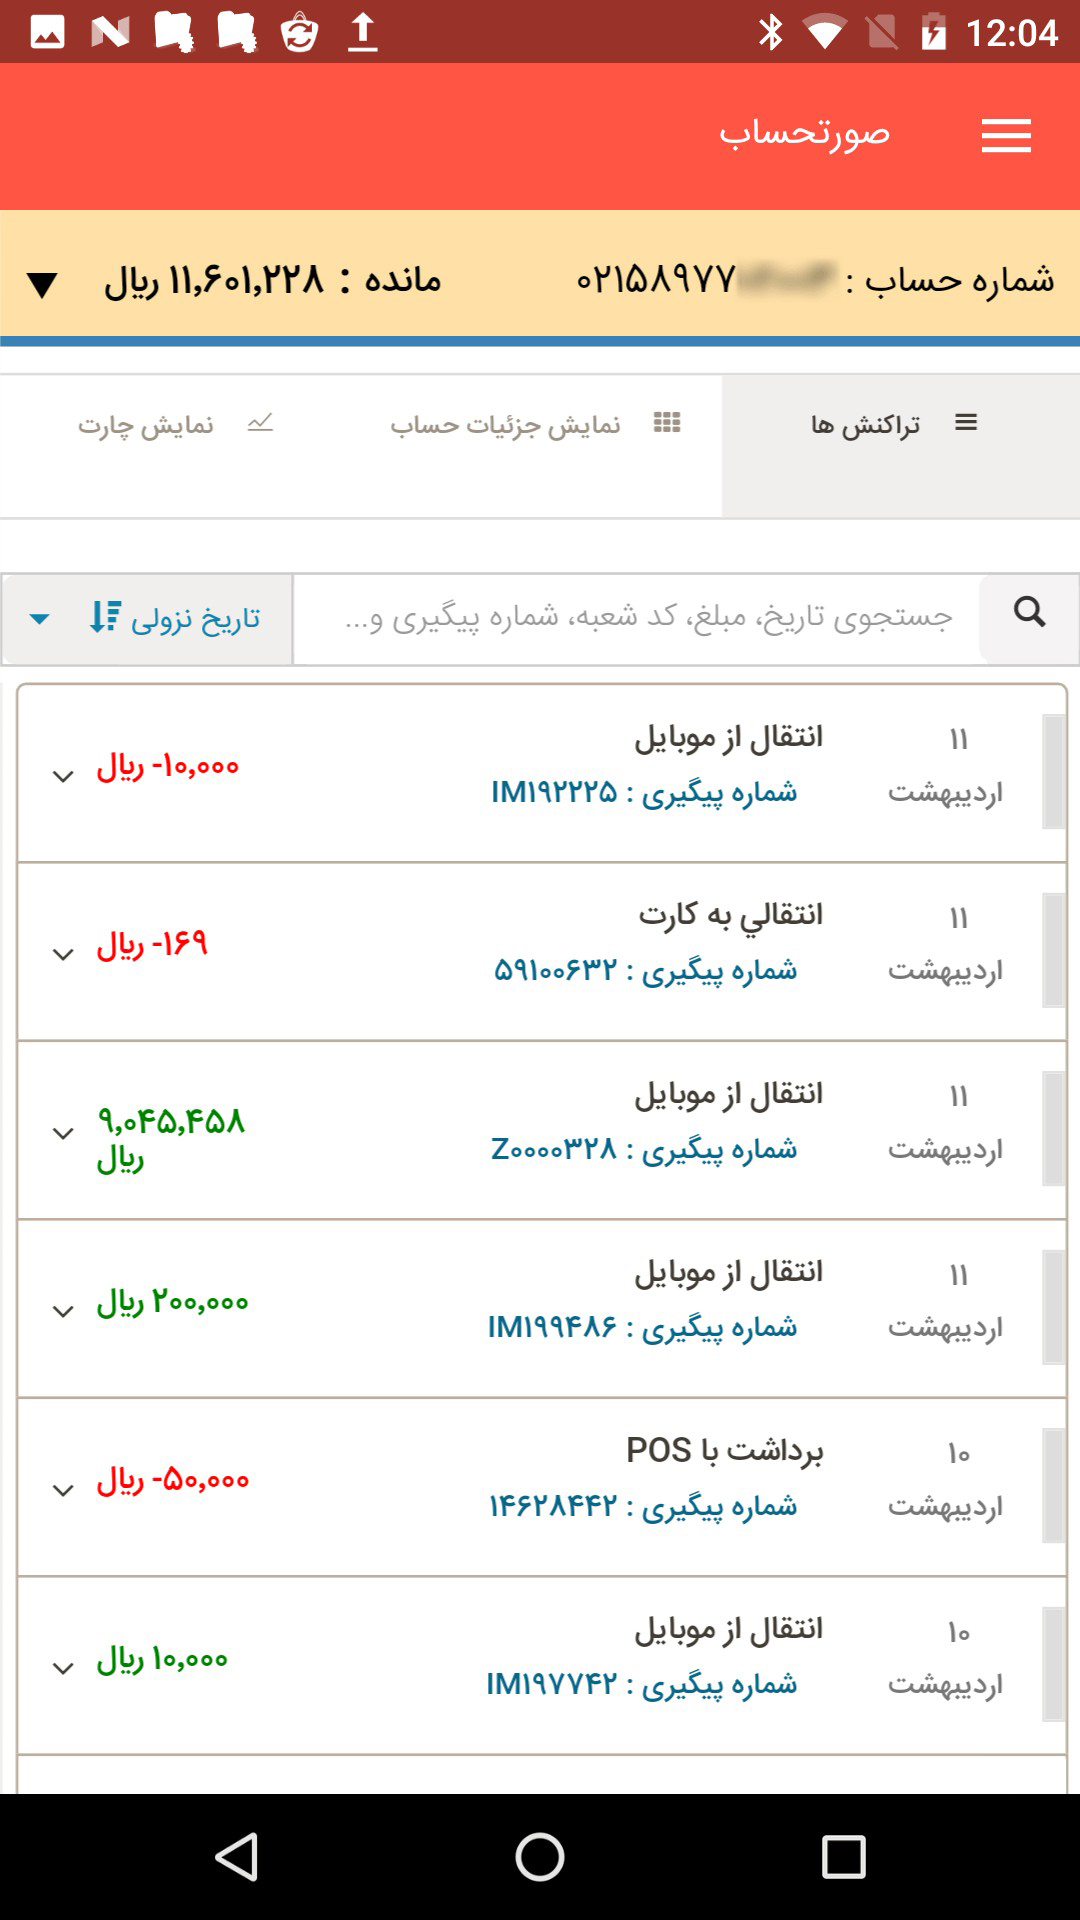 دانلود همراه بام ملی Melli Baam Mobile Bank 2.6.7 برای اندروید و ios